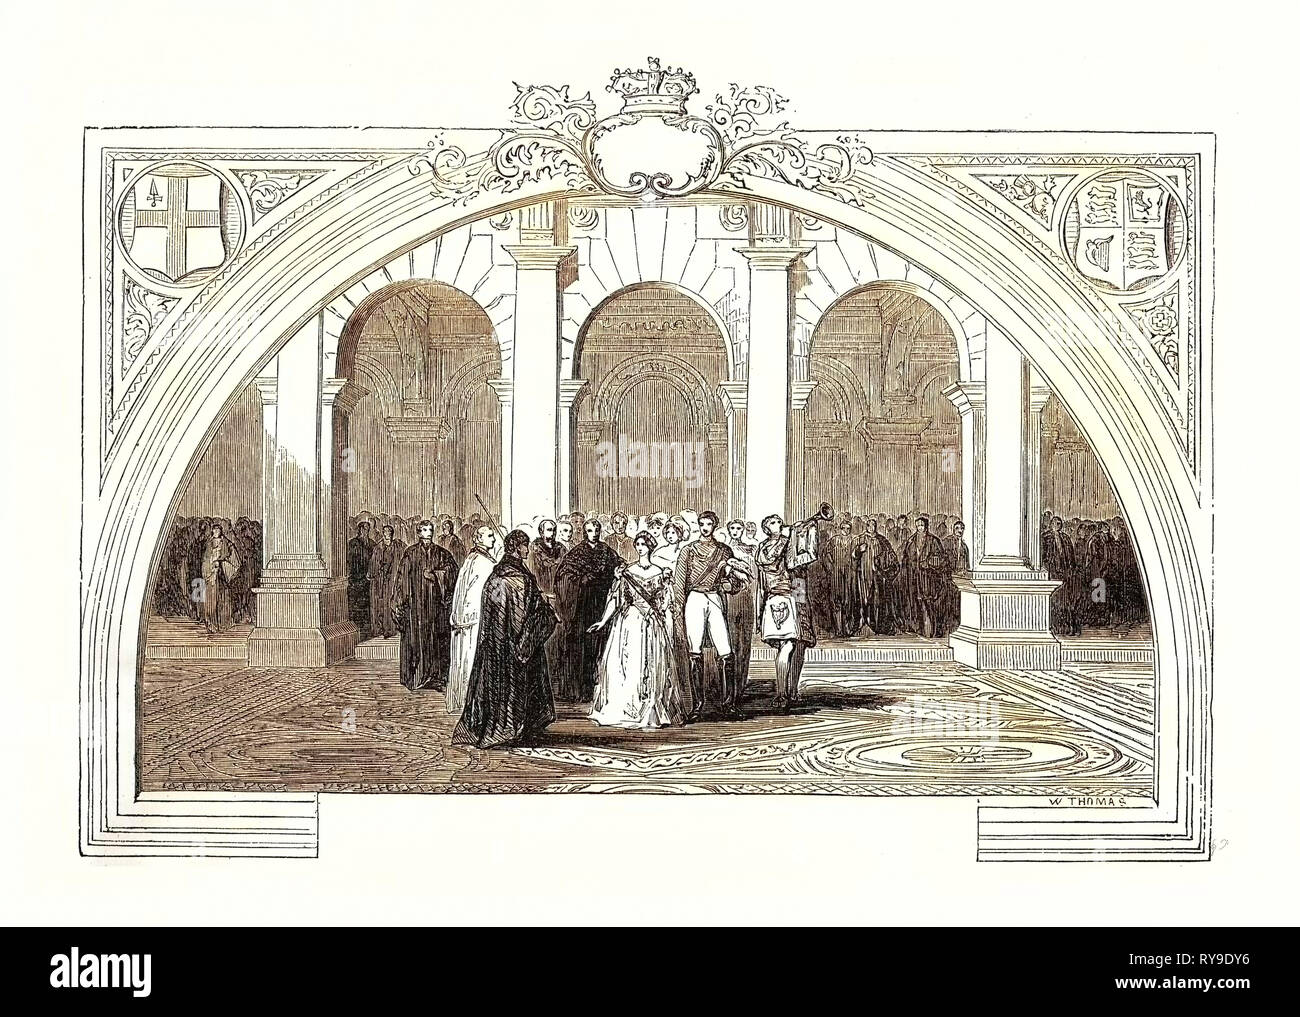 Eröffnung der Royal Exchange, 28. Oktober 1844. London, UK, Großbritannien, Großbritannien, Europa, Großbritannien, Großbritannien, europäischen Stockfoto